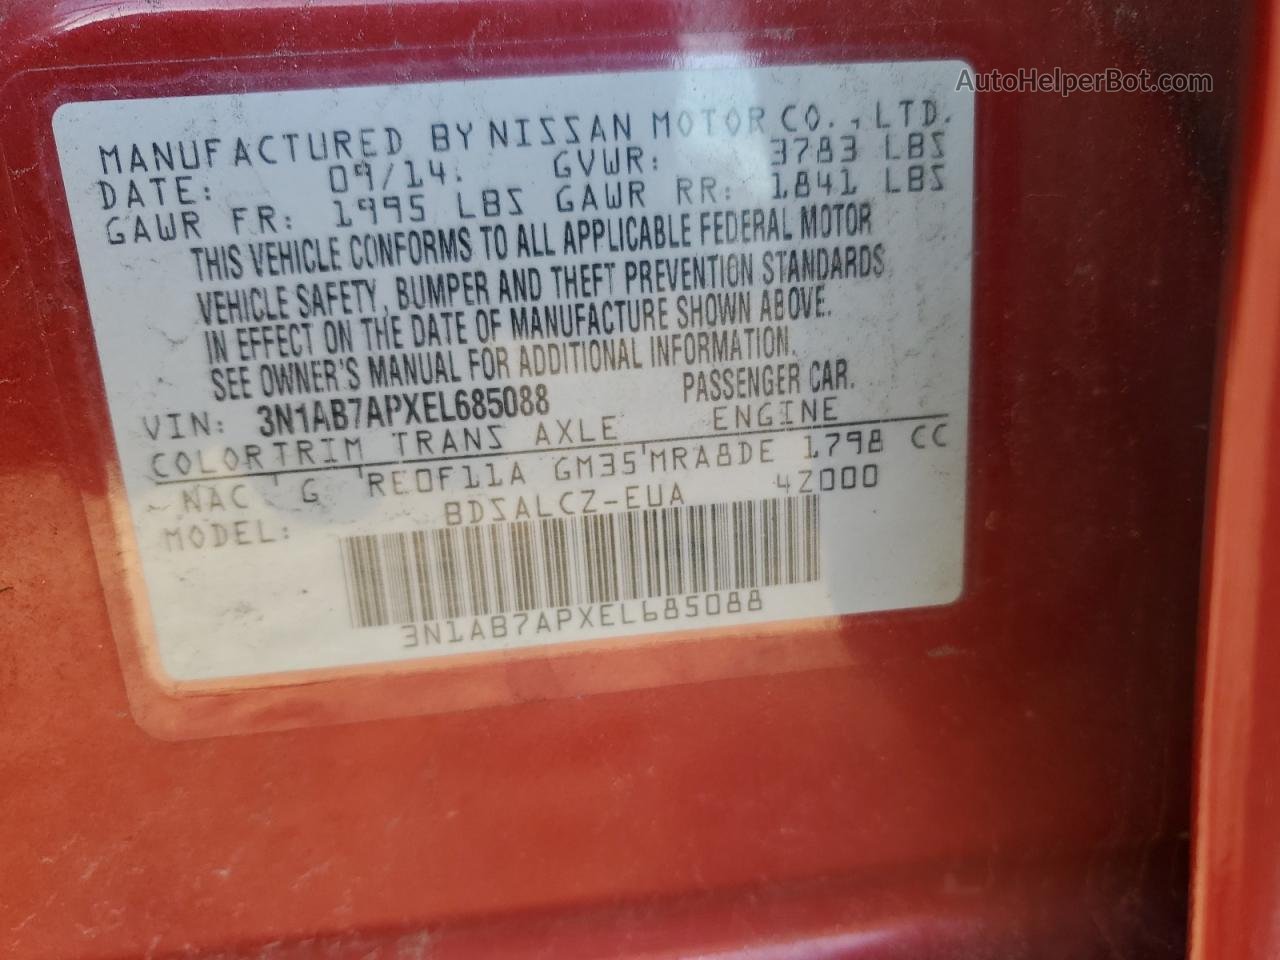 2014 Nissan Sentra S Красный vin: 3N1AB7APXEL685088